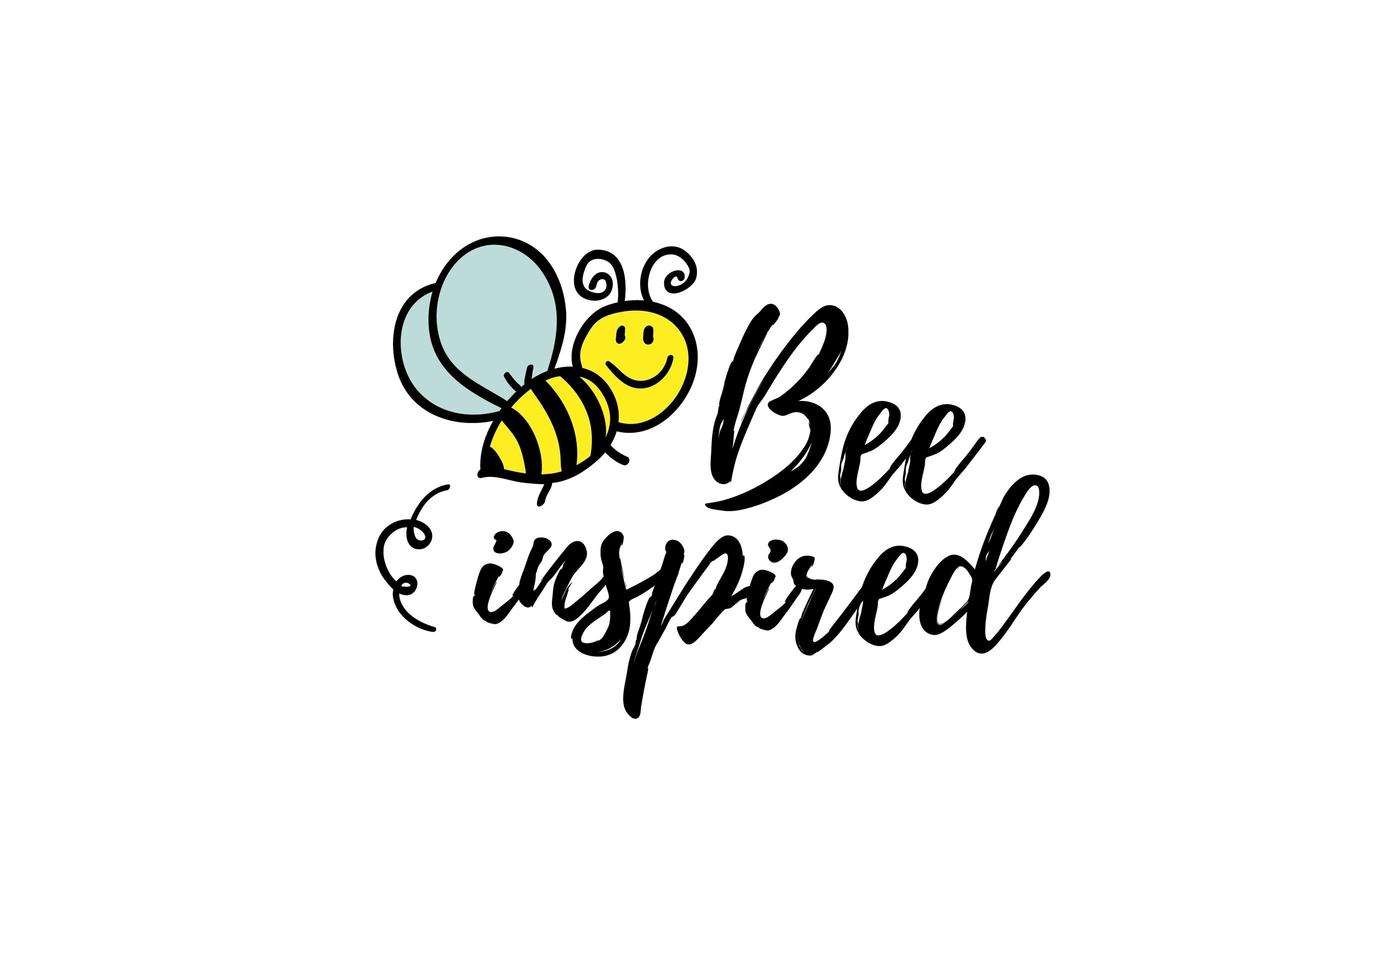 Biene inspirierte Phrase mit Doodle Biene auf weißem Hintergrund. Schriftzug Poster, Kartendesign oder T-Shirt, Textildruck. inspirierendes Motivationszitat-Plakat. vektor